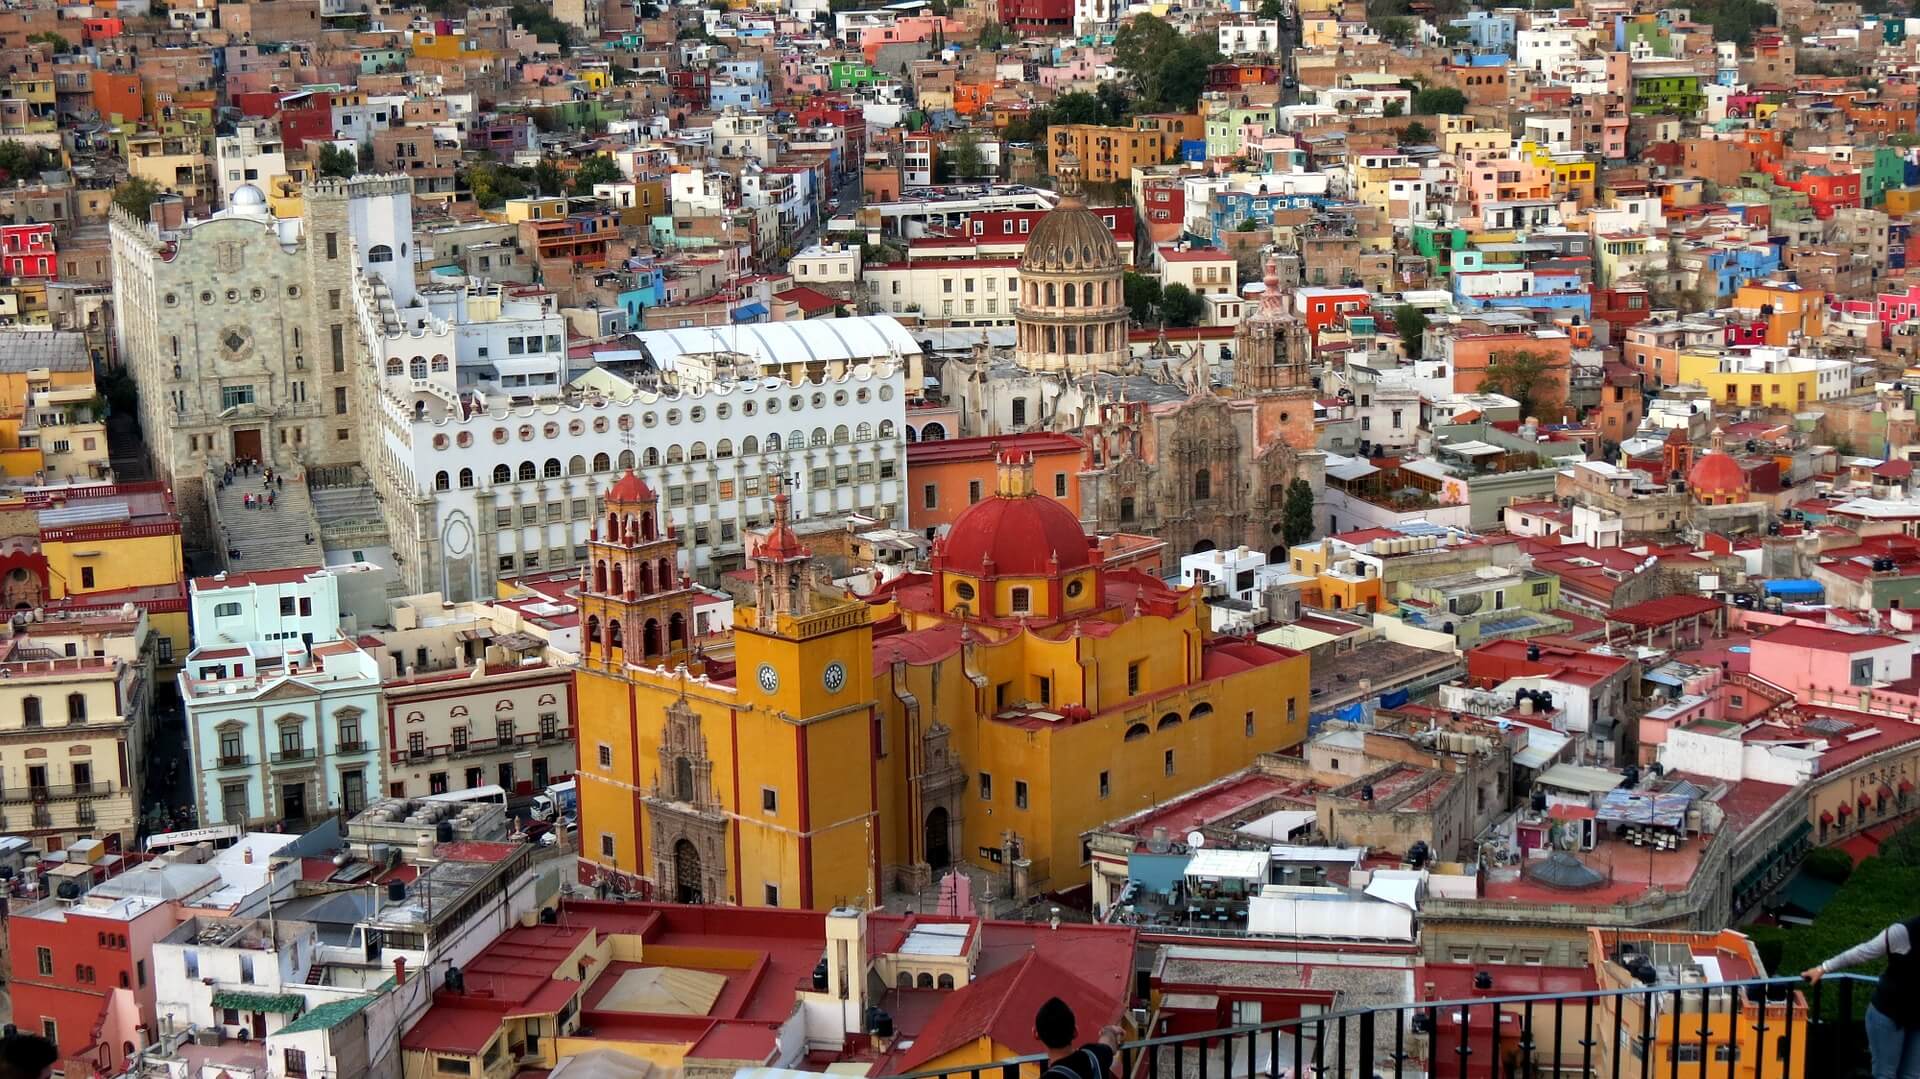 Guanajuato's Basilica of Our Lady of Guanajuato